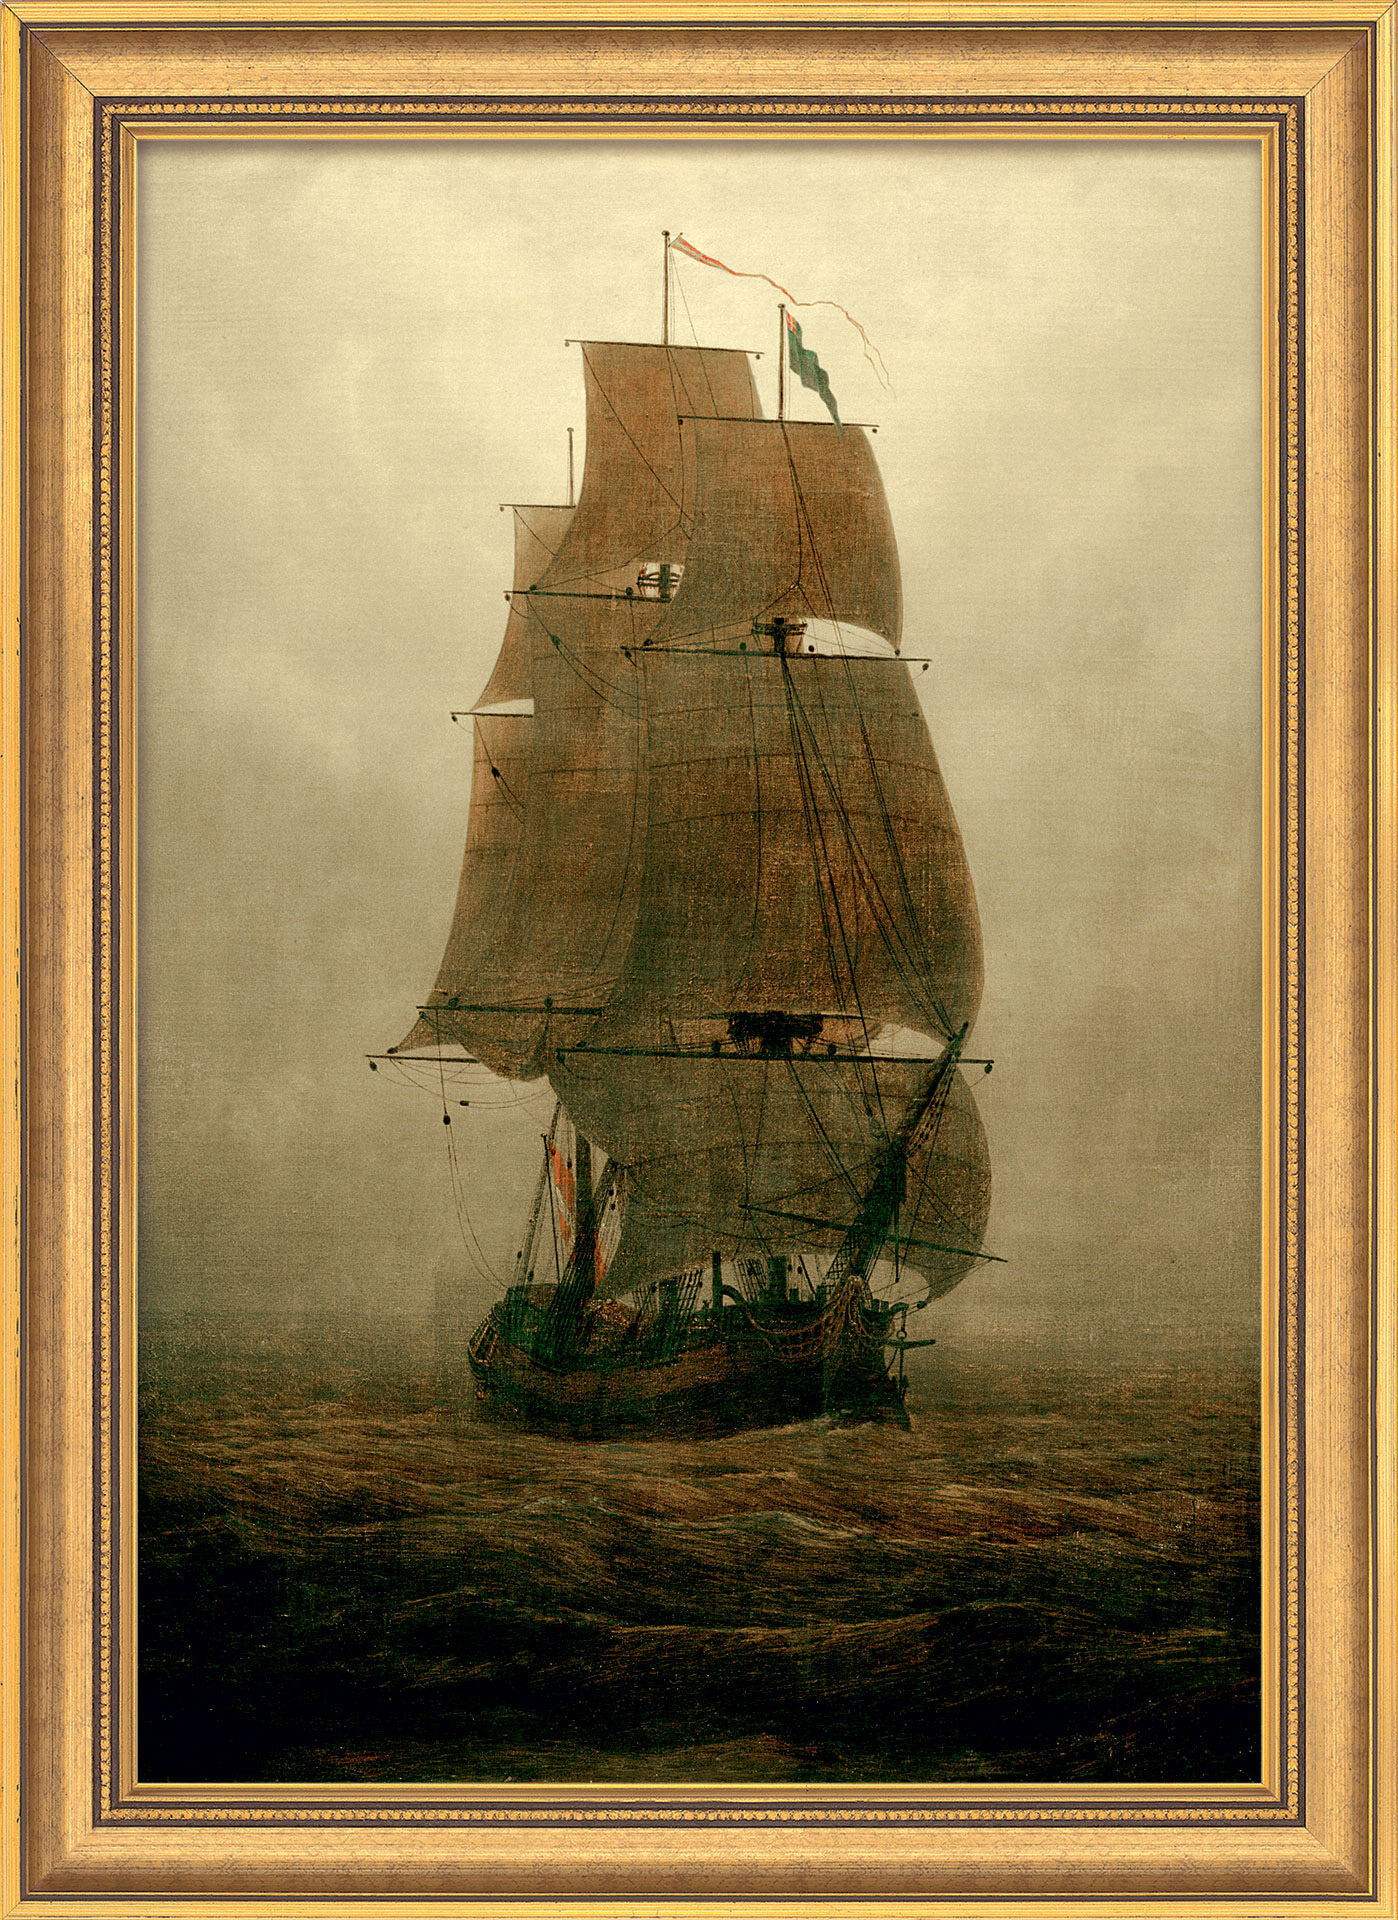 Bild "Segelschiff im Nebel" (1815), gerahmt von Caspar David Friedrich